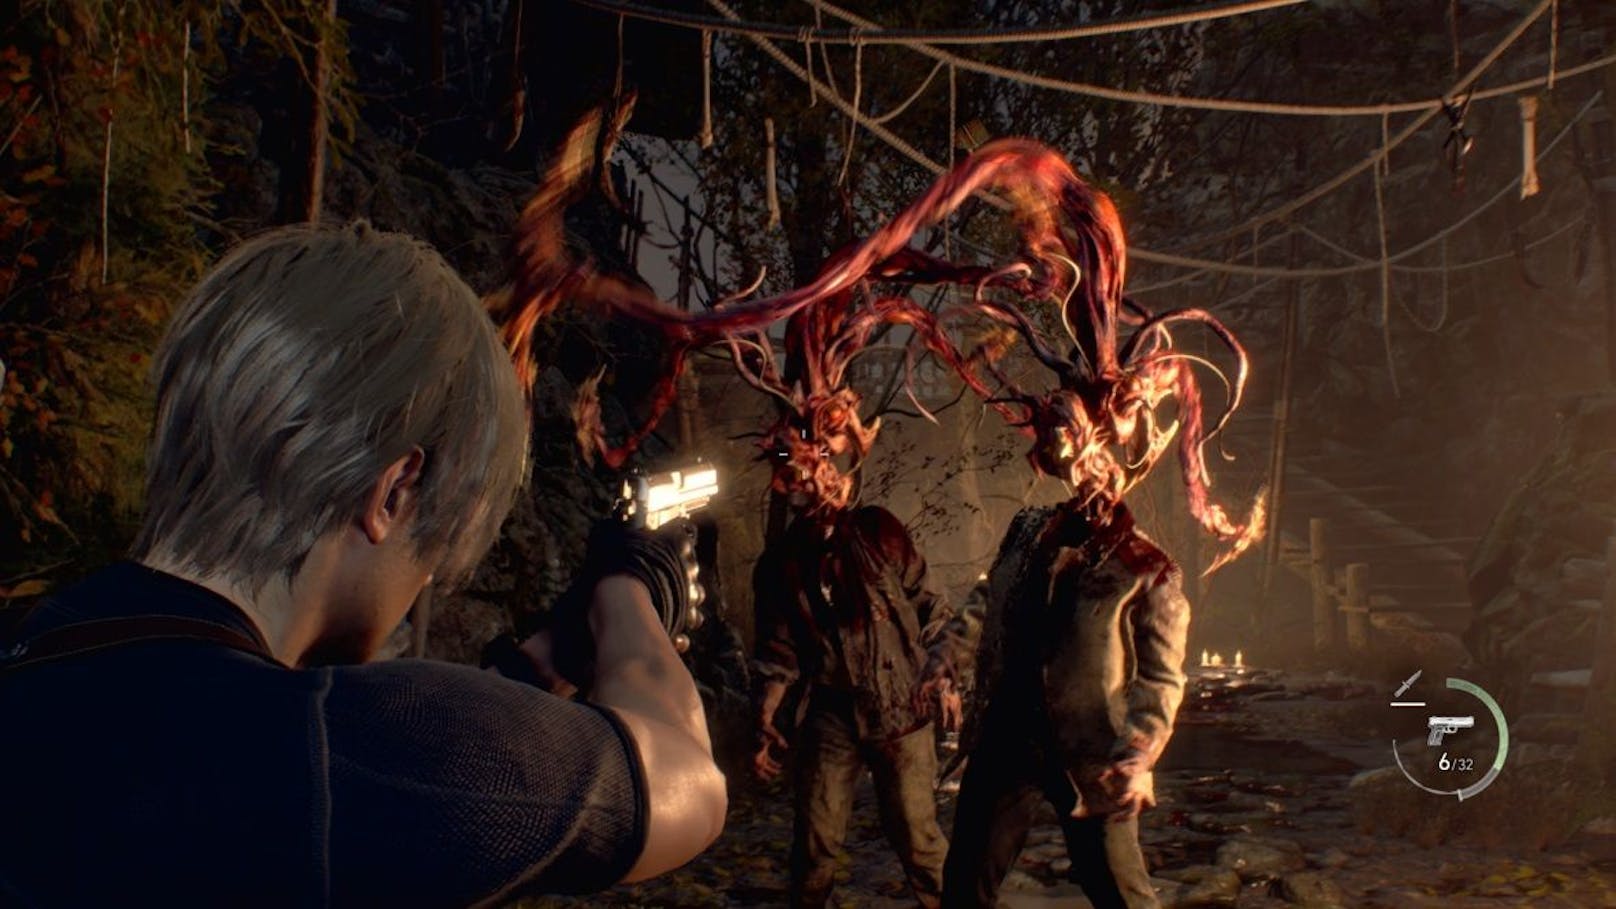 Vollkommen neuer Horror im "Resident Evil 4 Remake" – und er kommt nun auch auf iPhones.